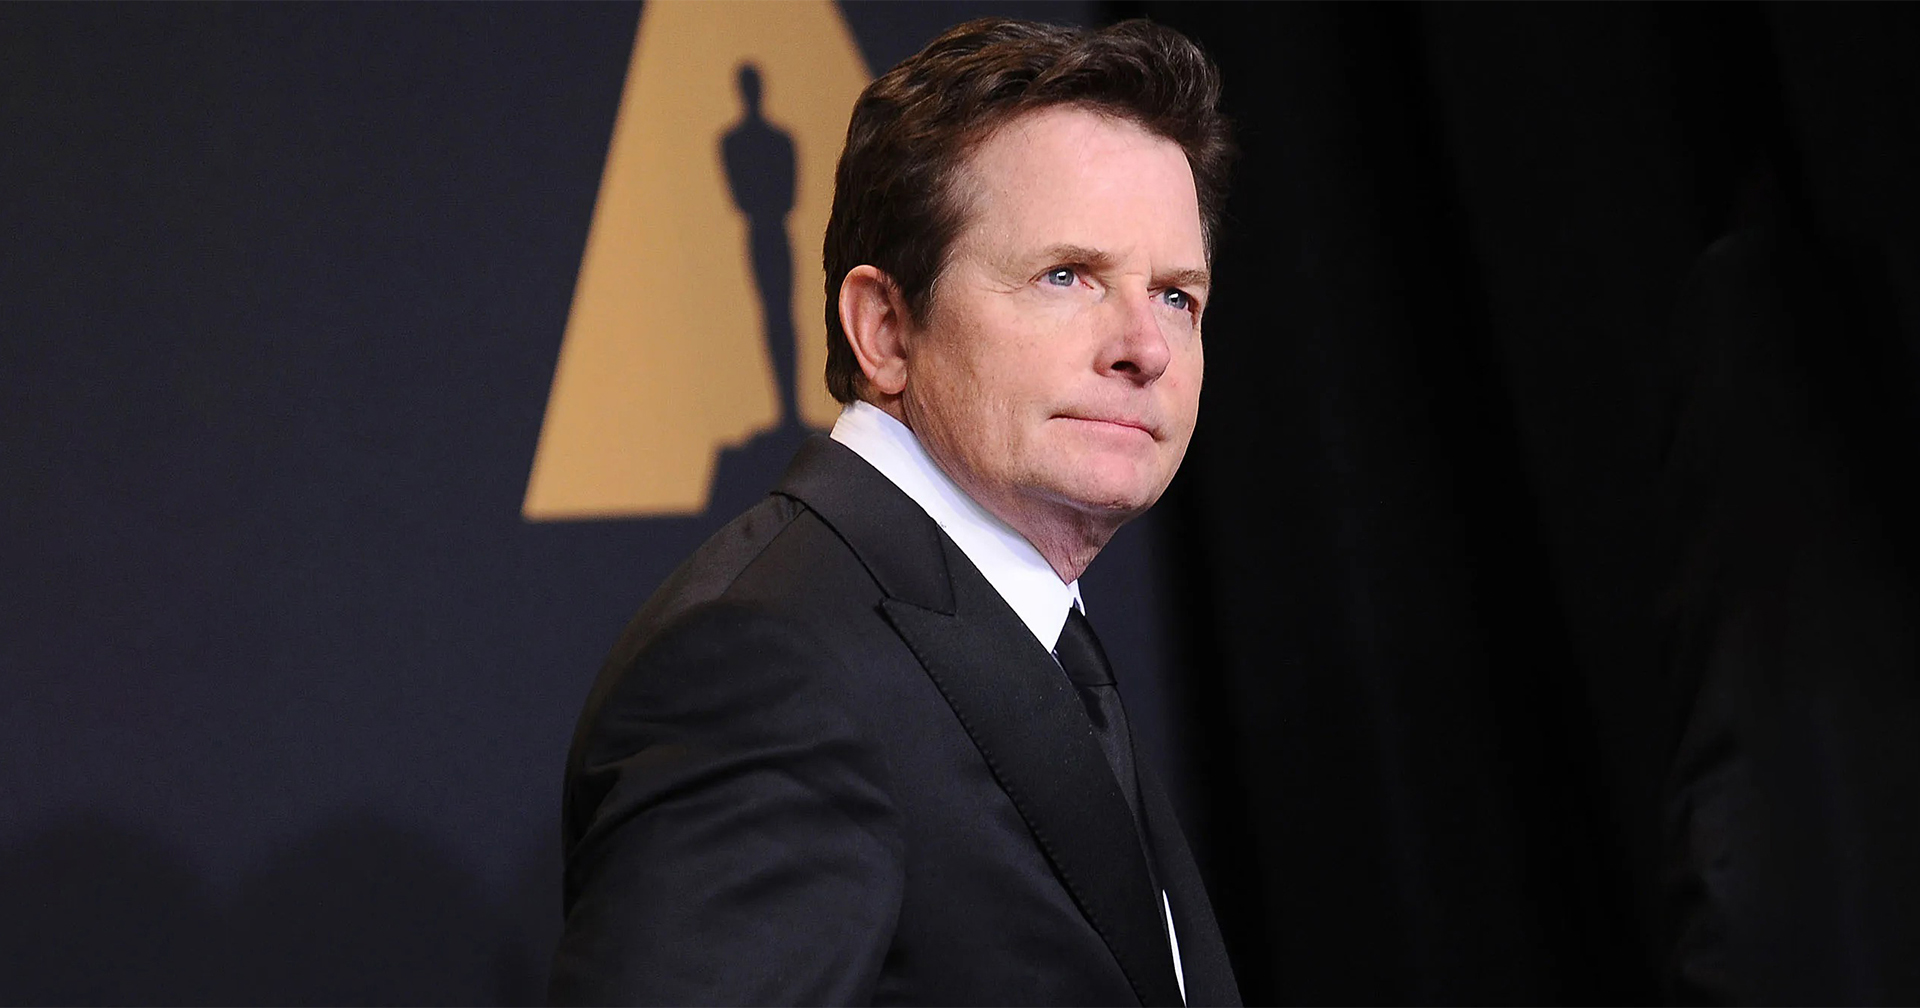 หนัง ‘Once Upon a Time in Hollywood’ ทำให้ Michael J. Fox ตัดสินใจเกษียณงานแสดงในปี 2020